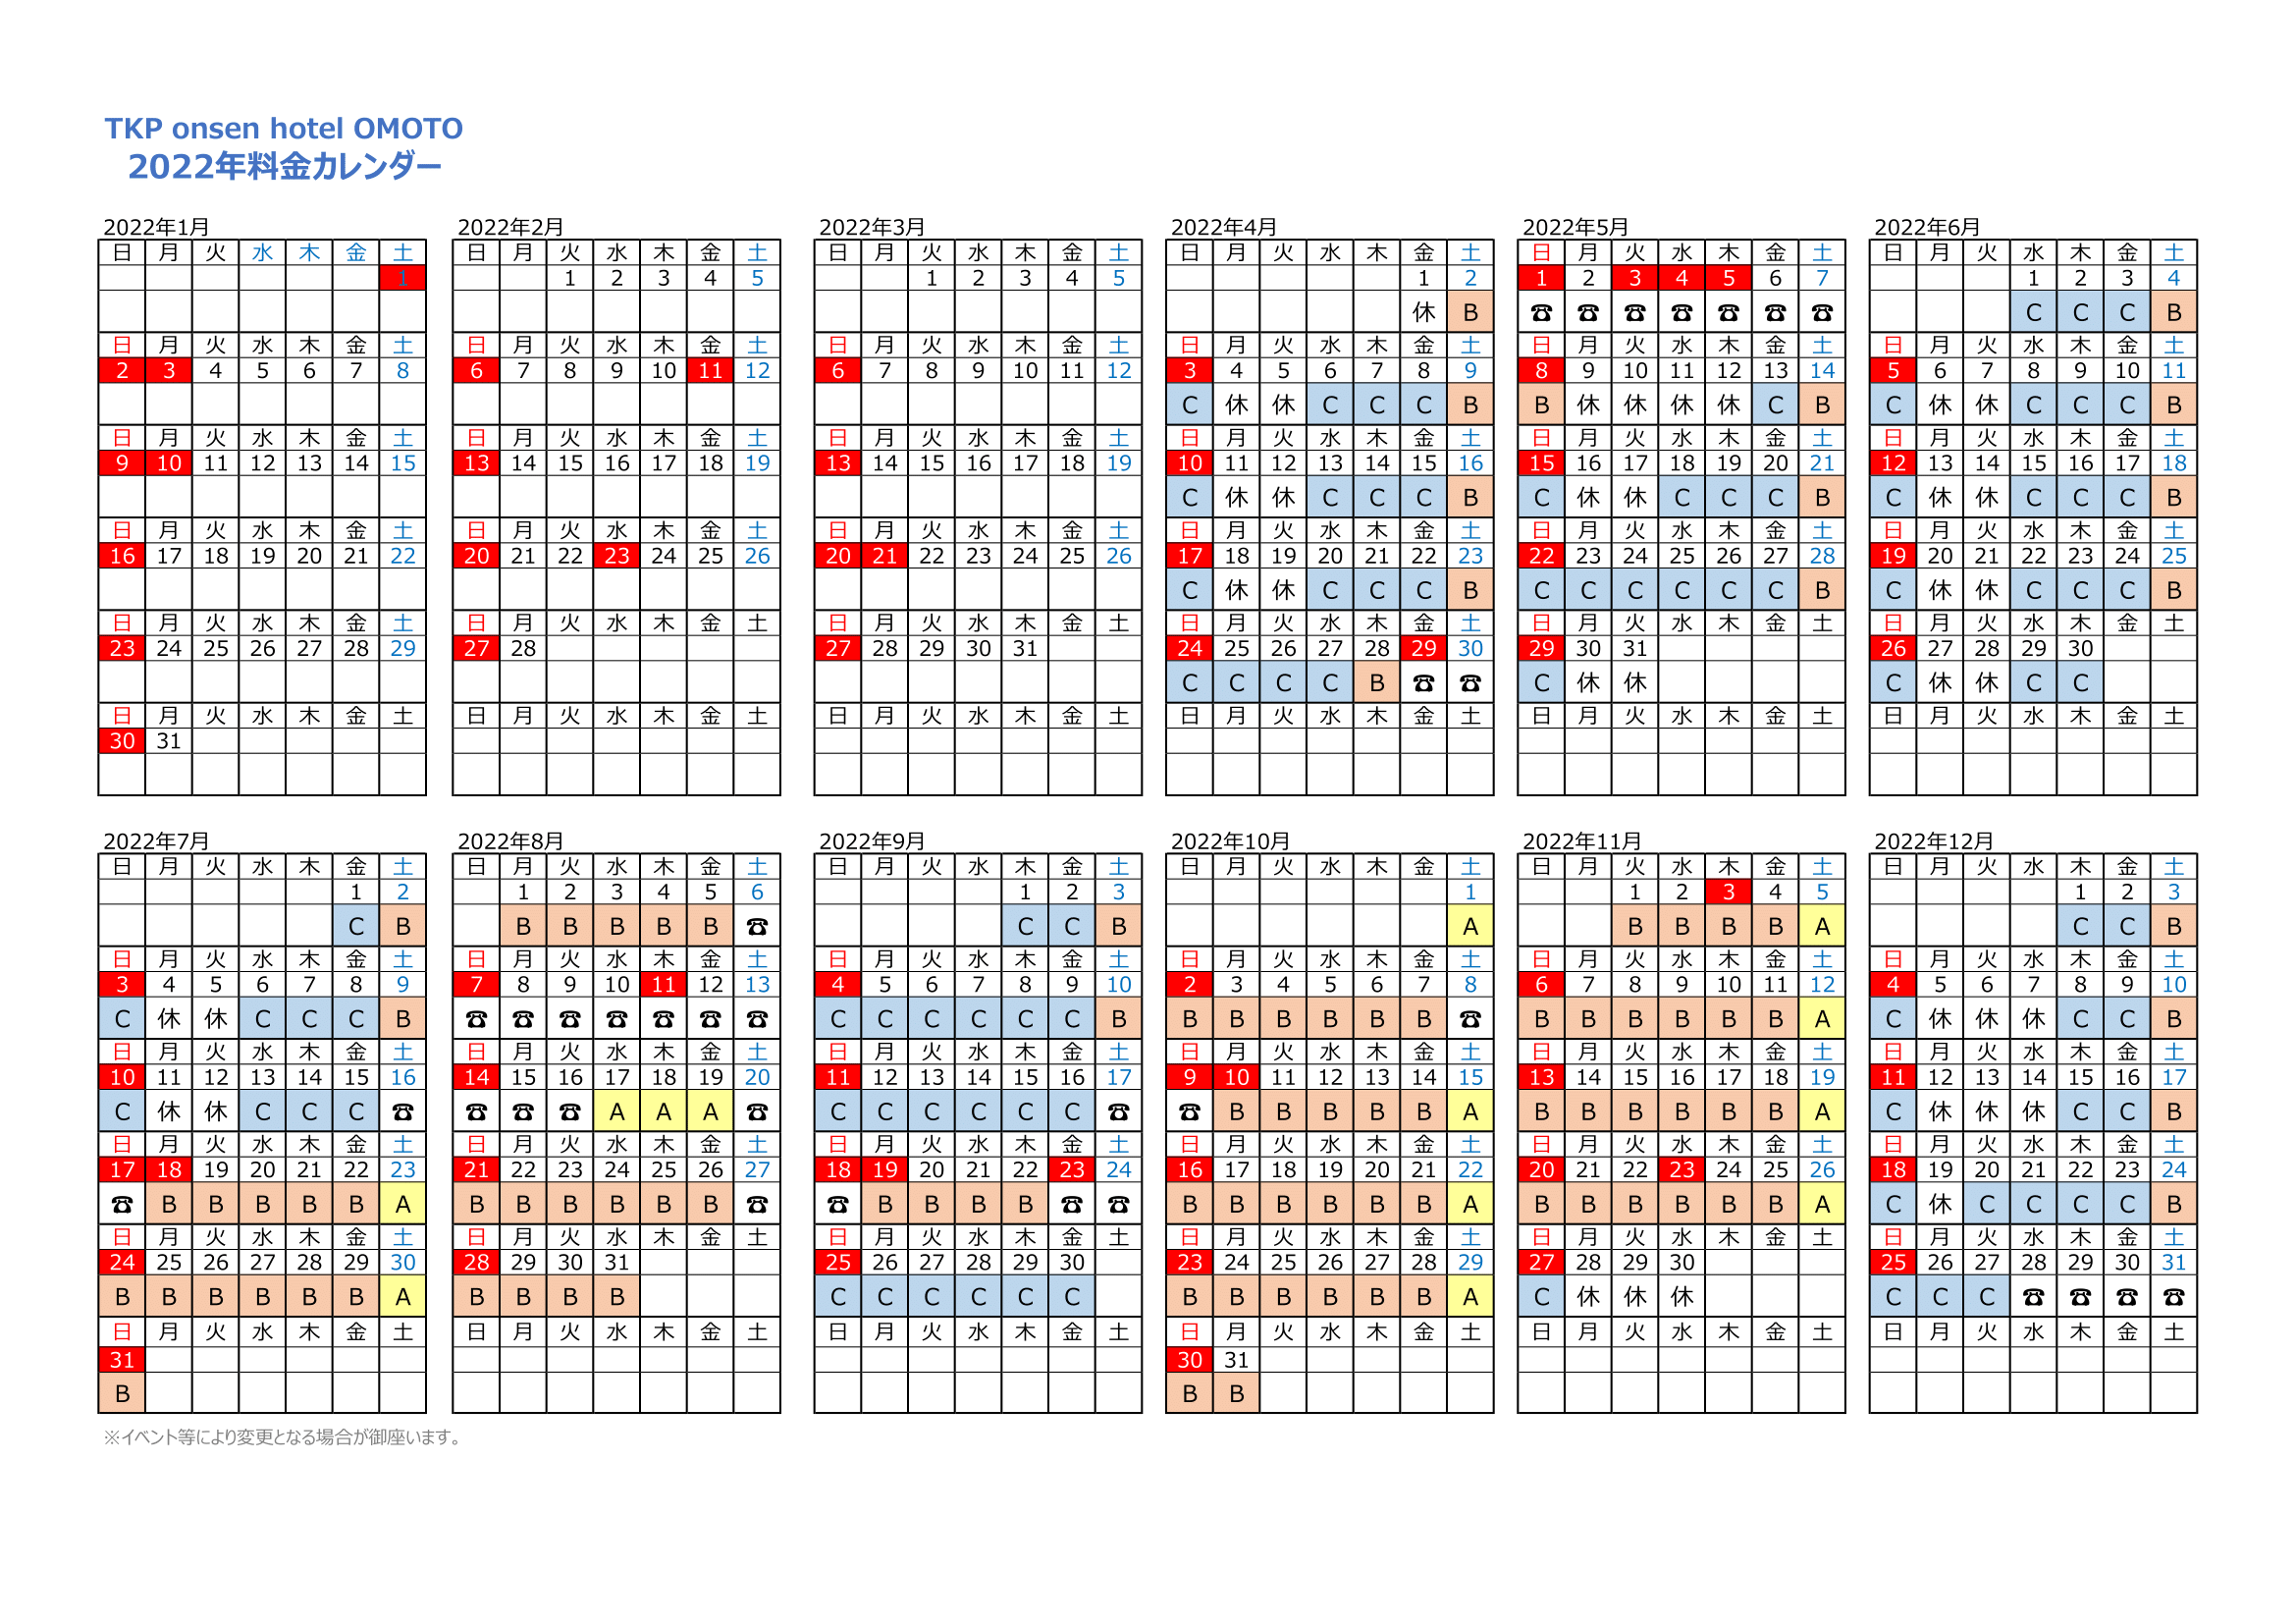 団体プラン料金カレンダー